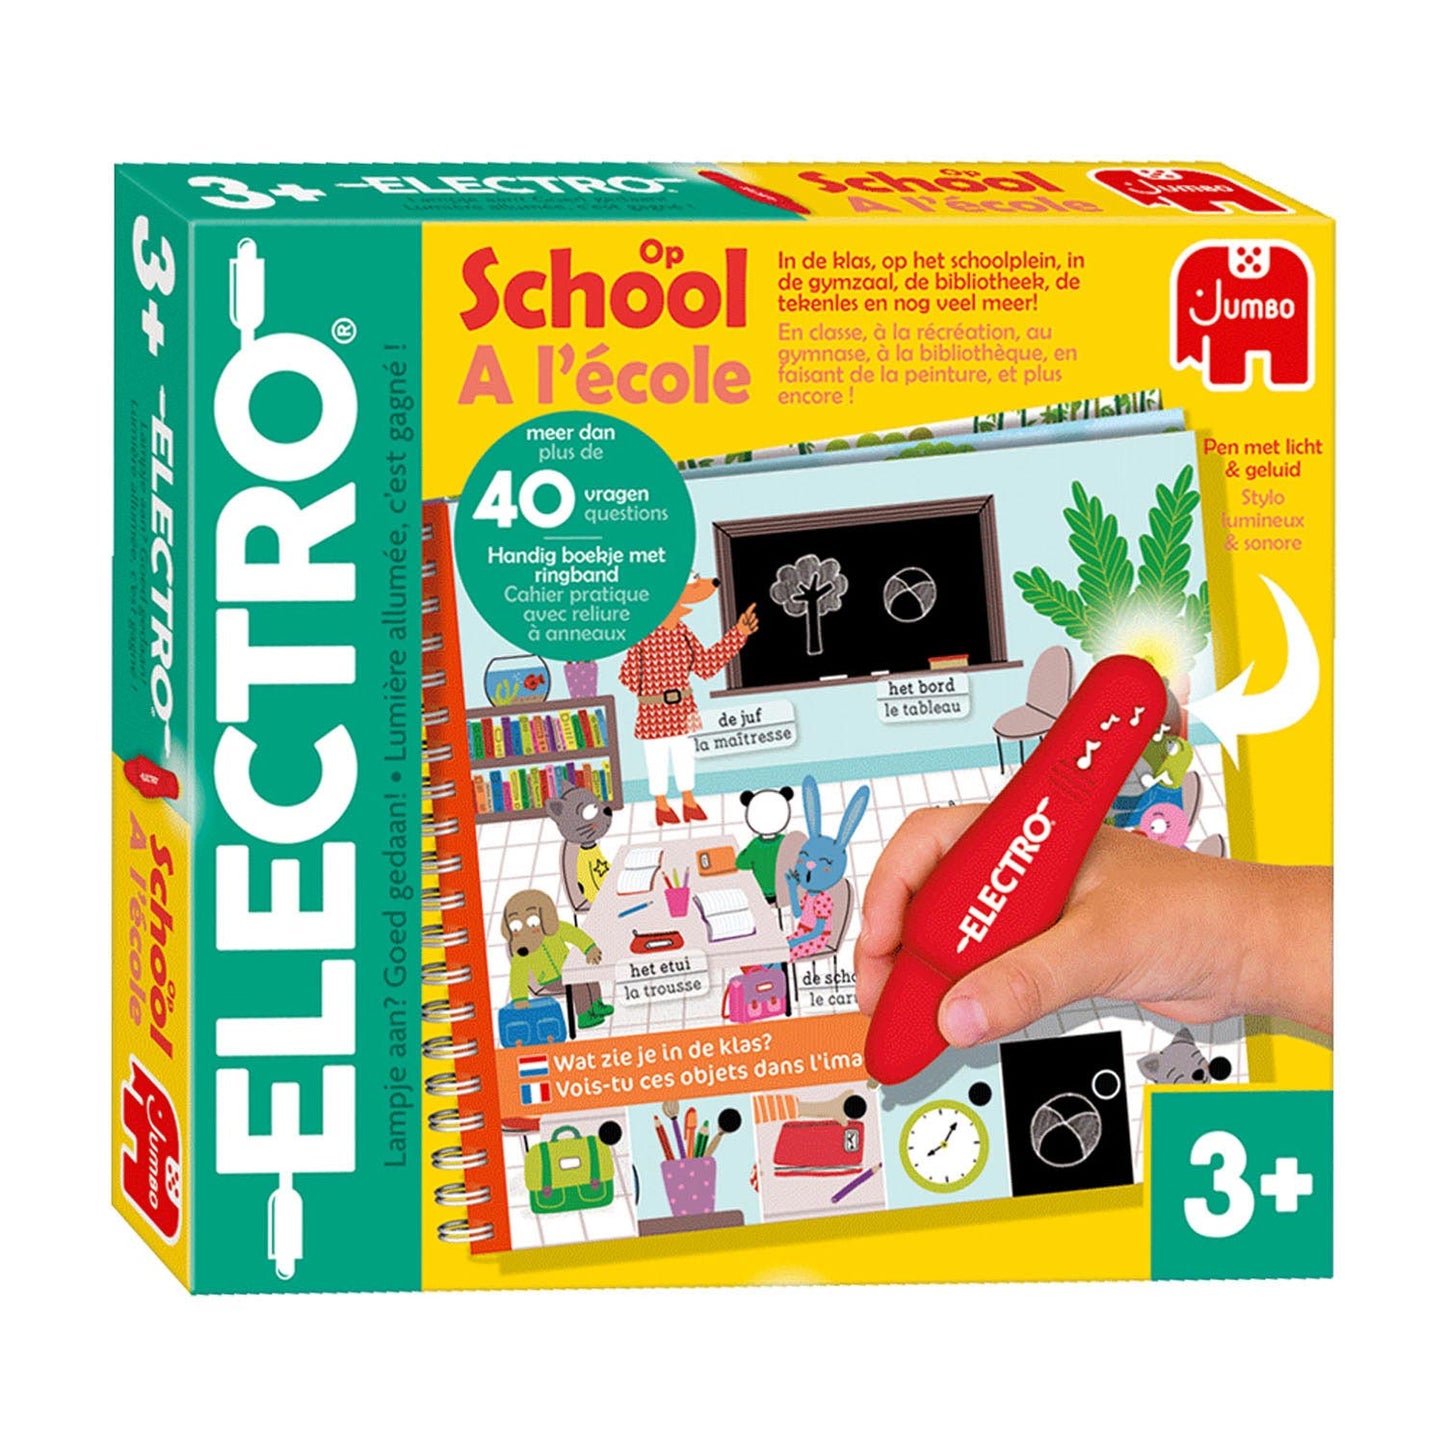 Jumbo Electro en el juego educativo escolar